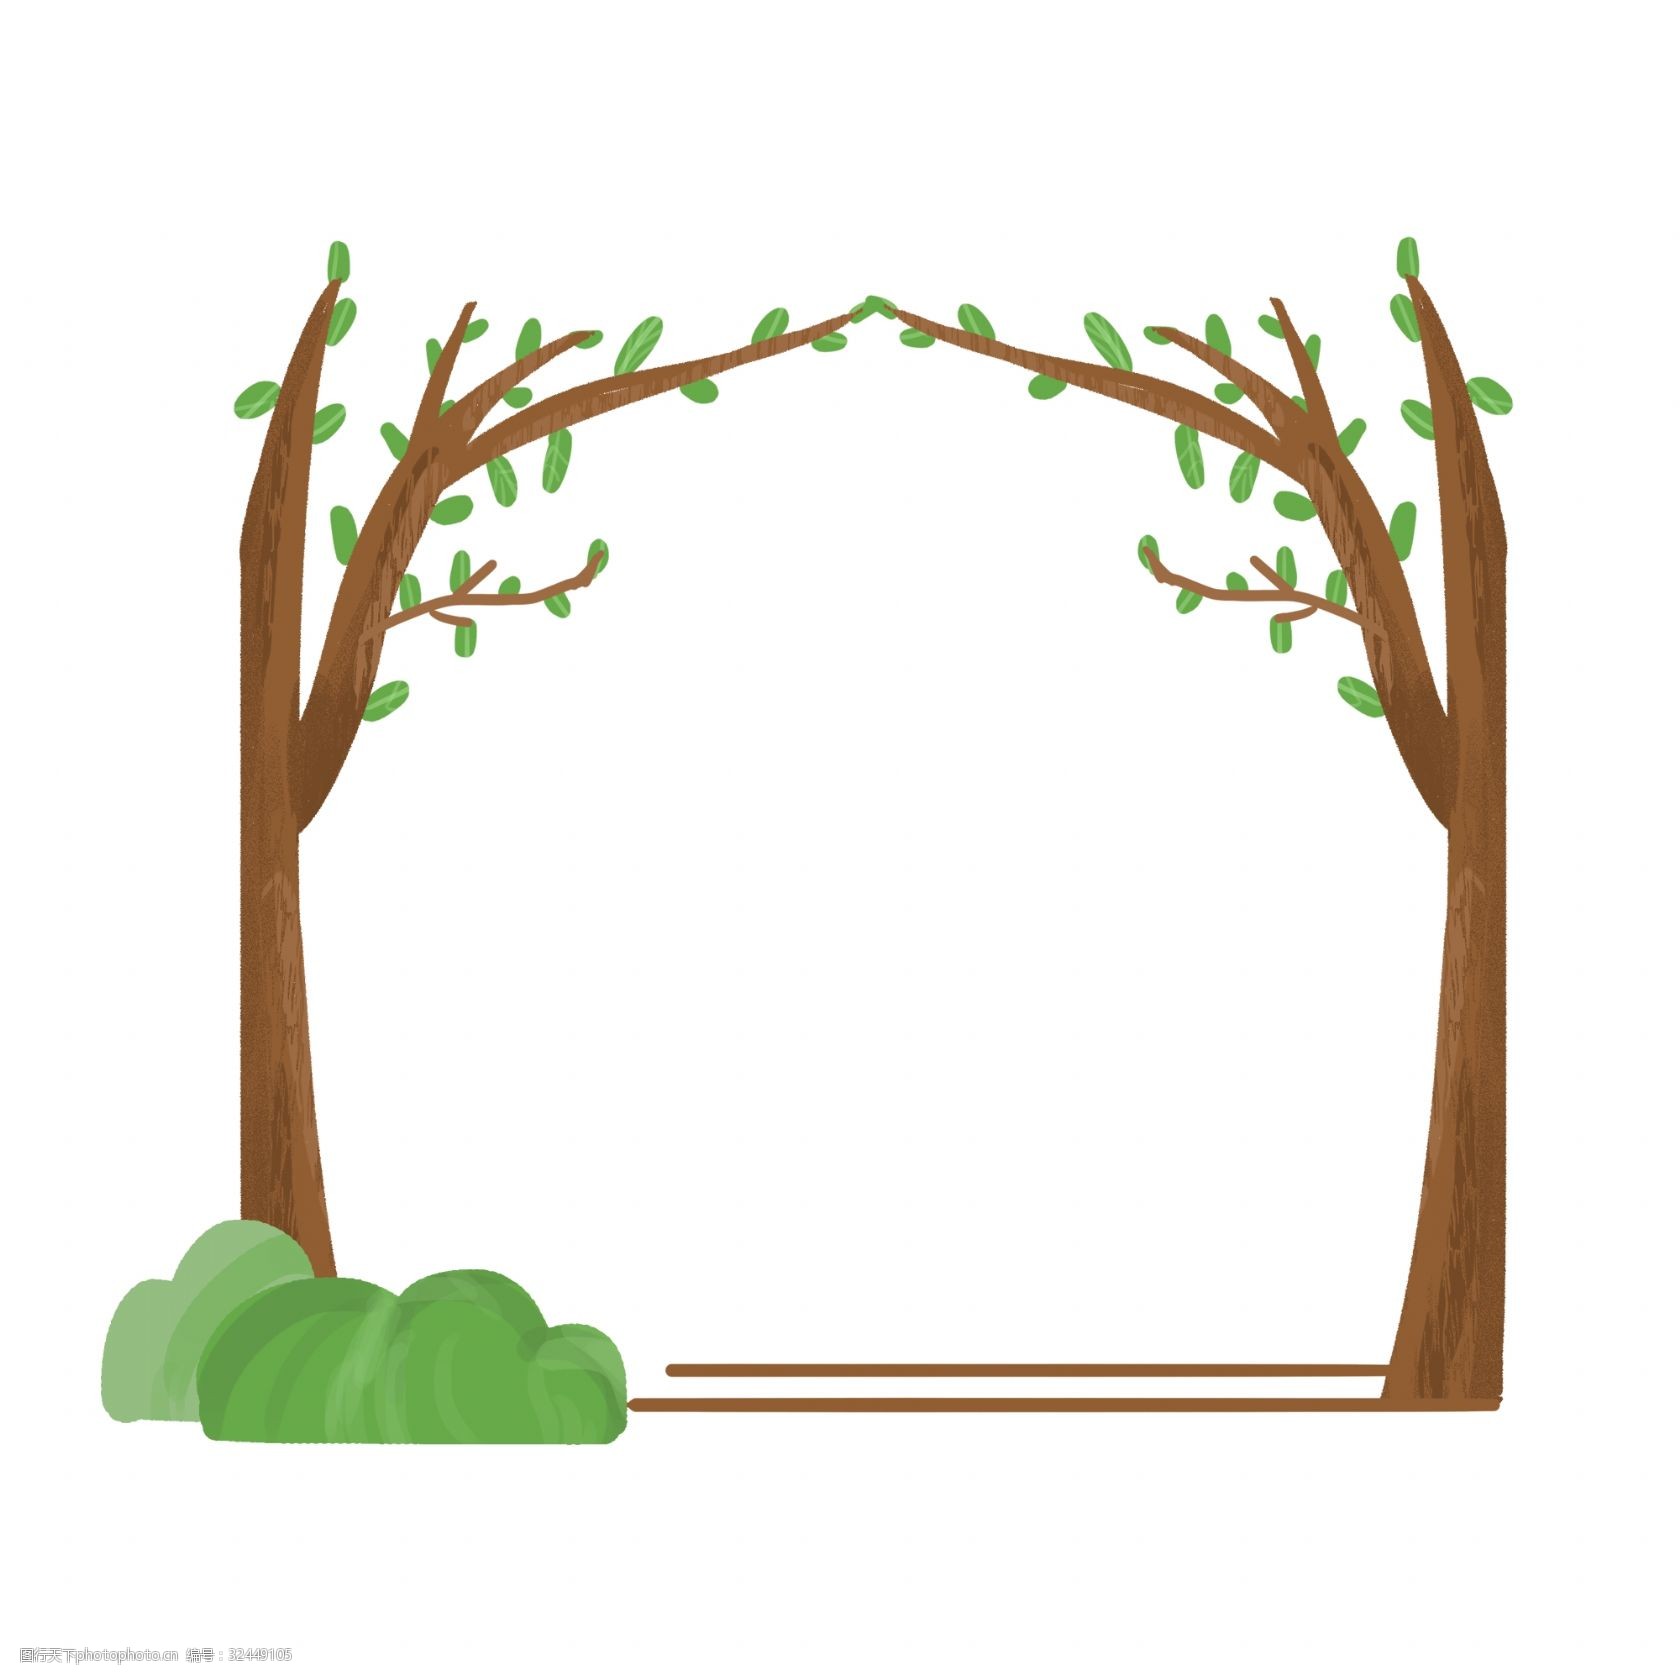 关键词:春季树木装饰边框 棕色的树干 绿色的叶子 绿色的石头 植物